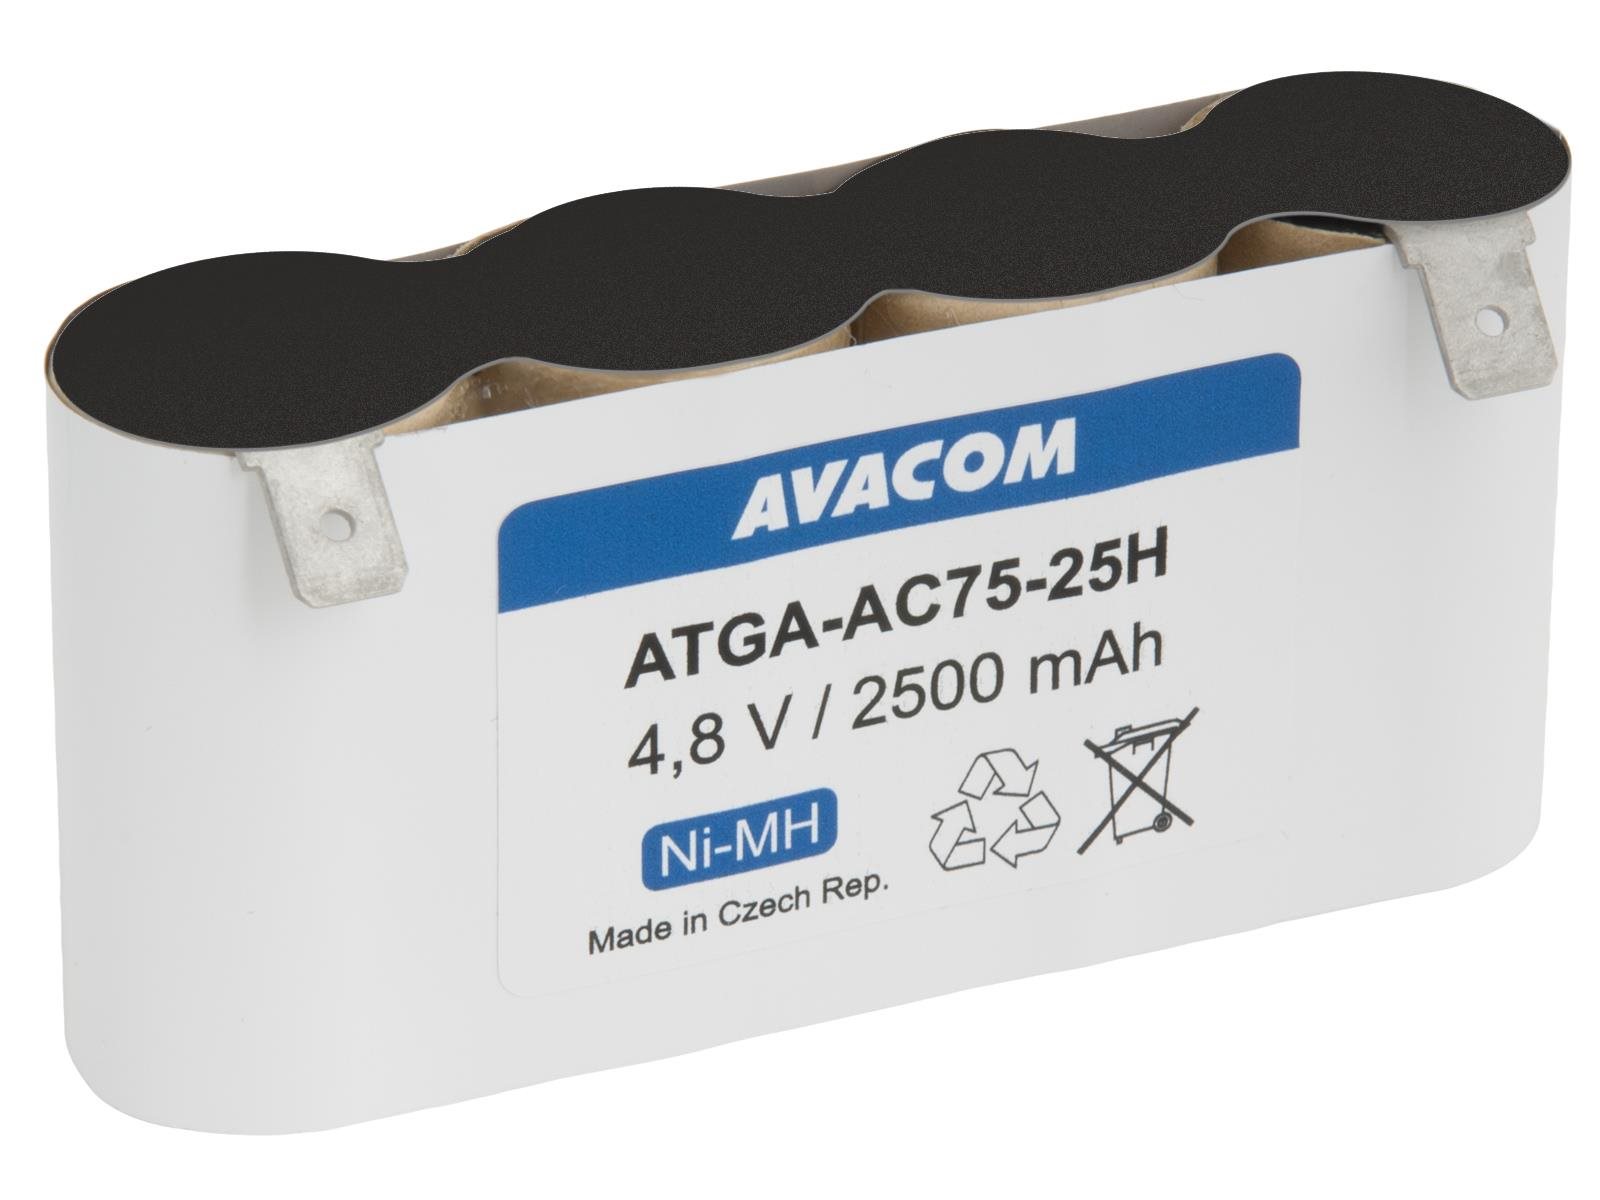 Avacom akkumulátor Gardena szerszámokhoz, ACCU 75 típusú, Ni-MH 4,8V, 2500mAh